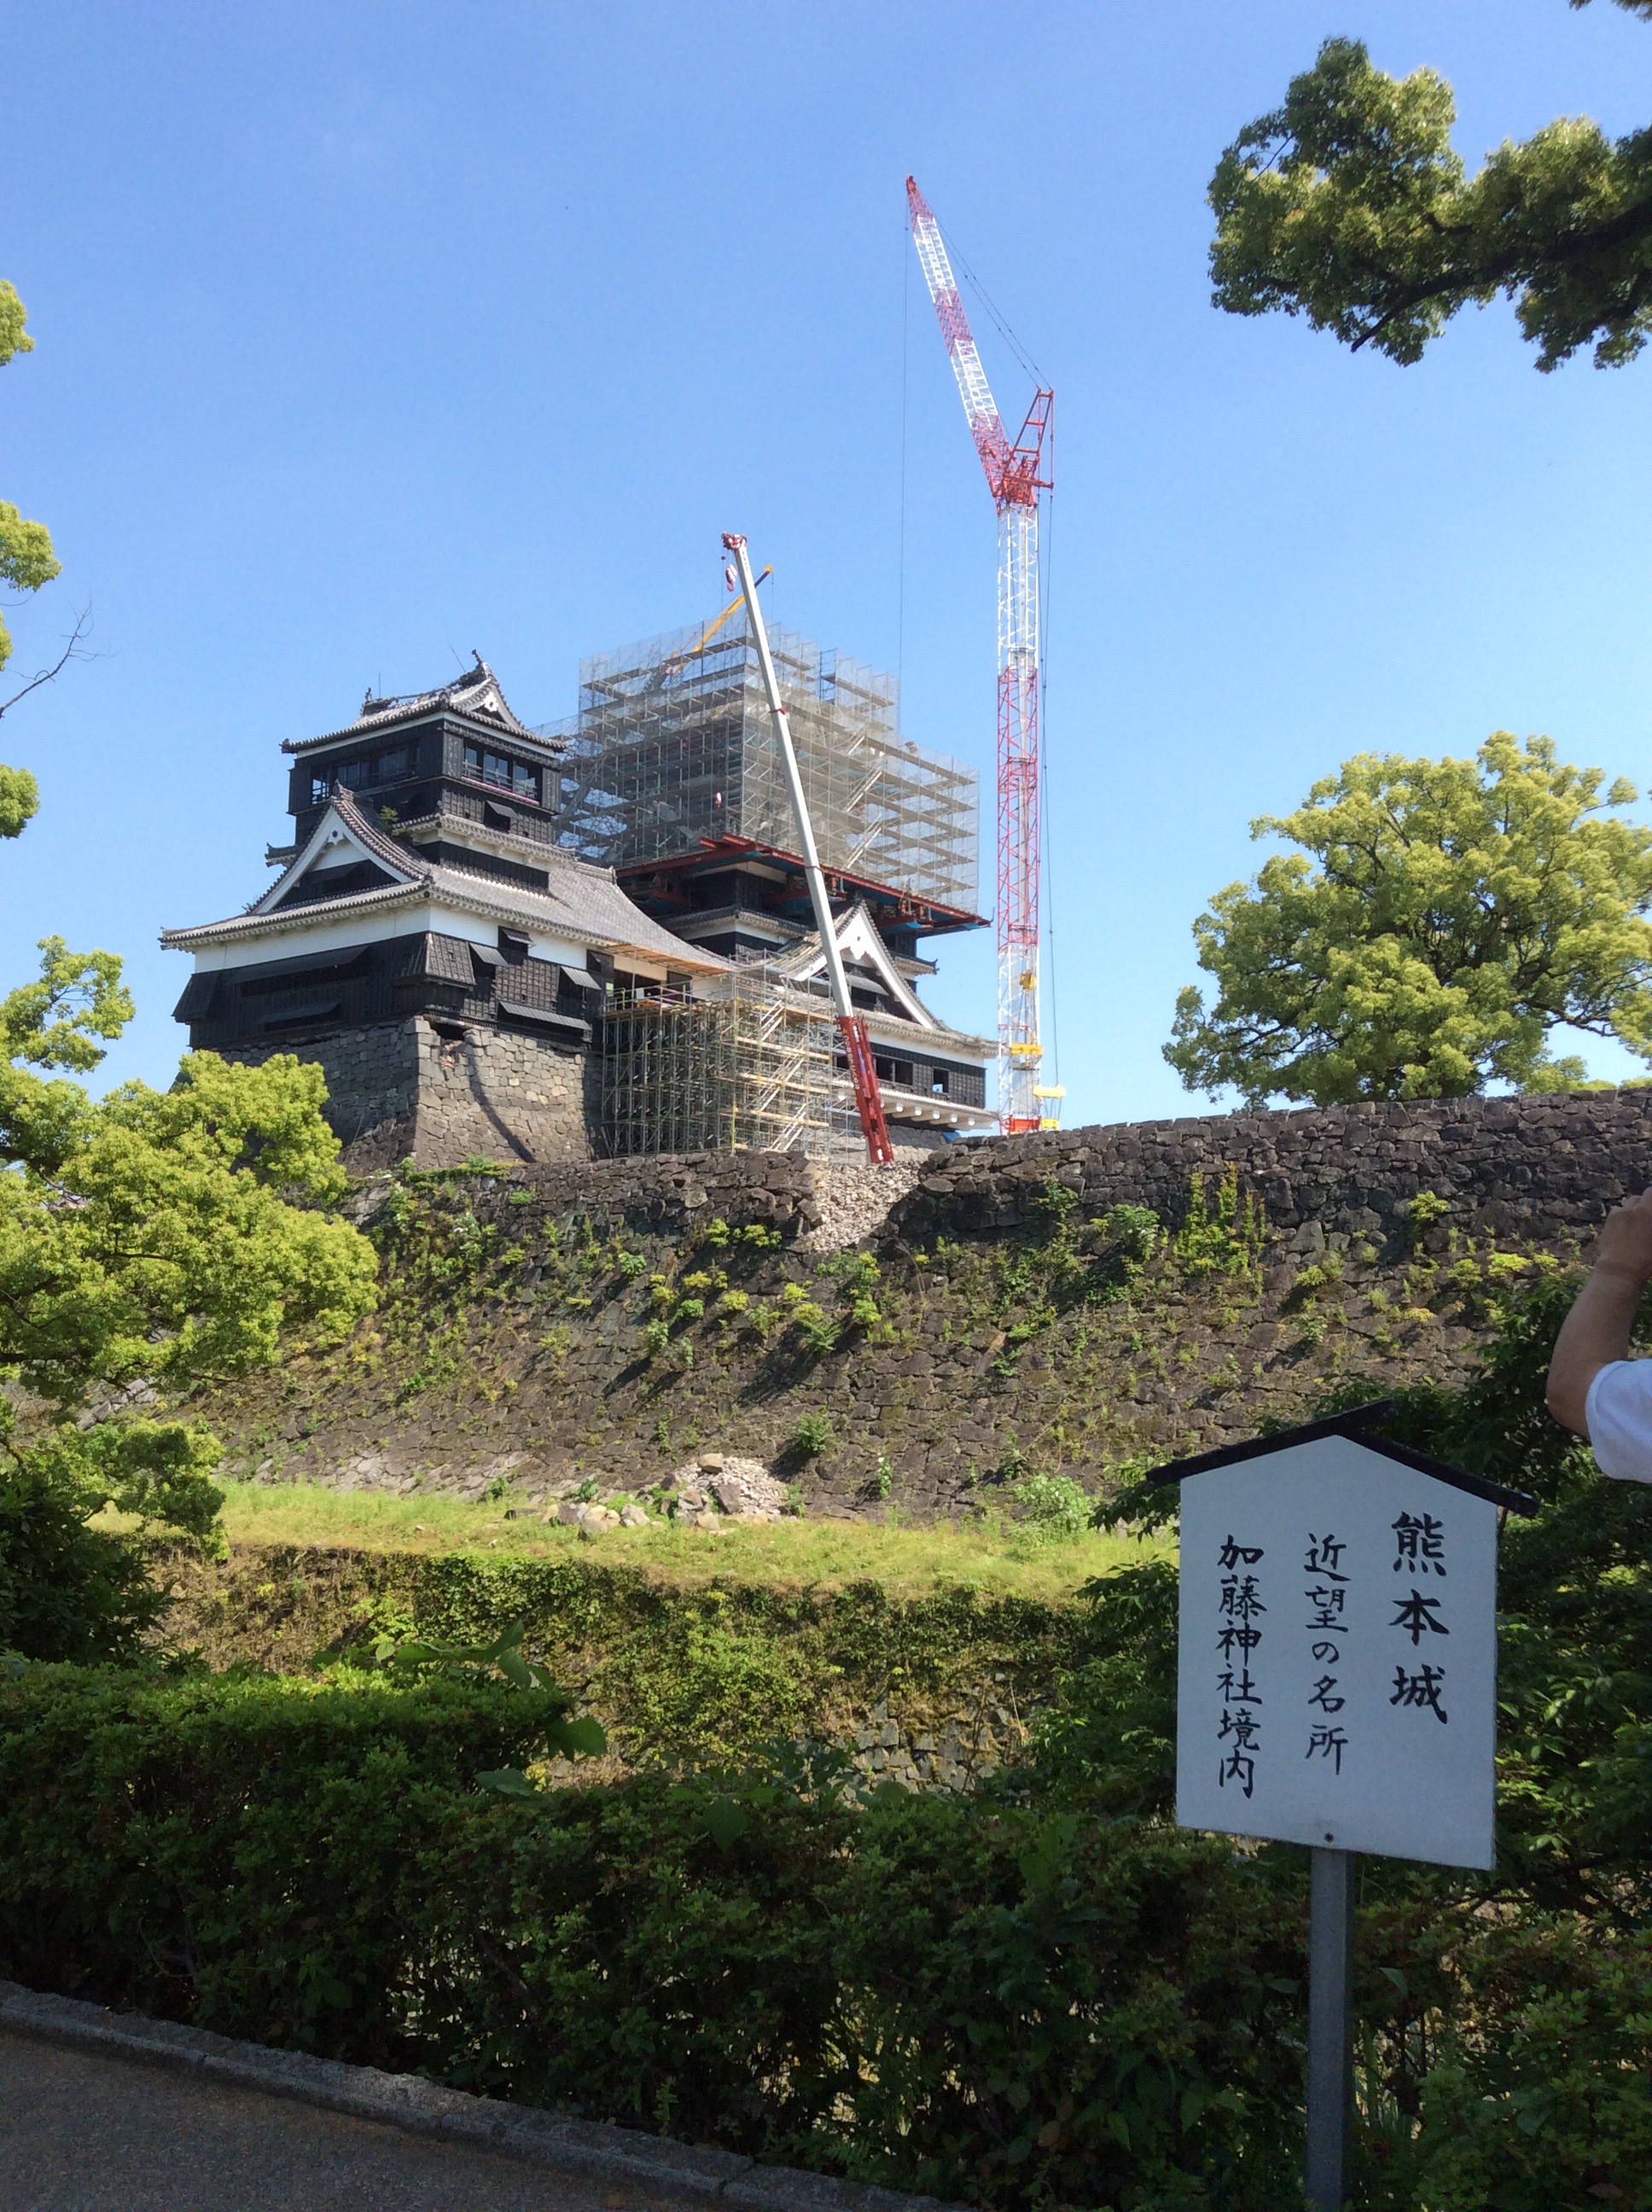 熊本城復興の兆し